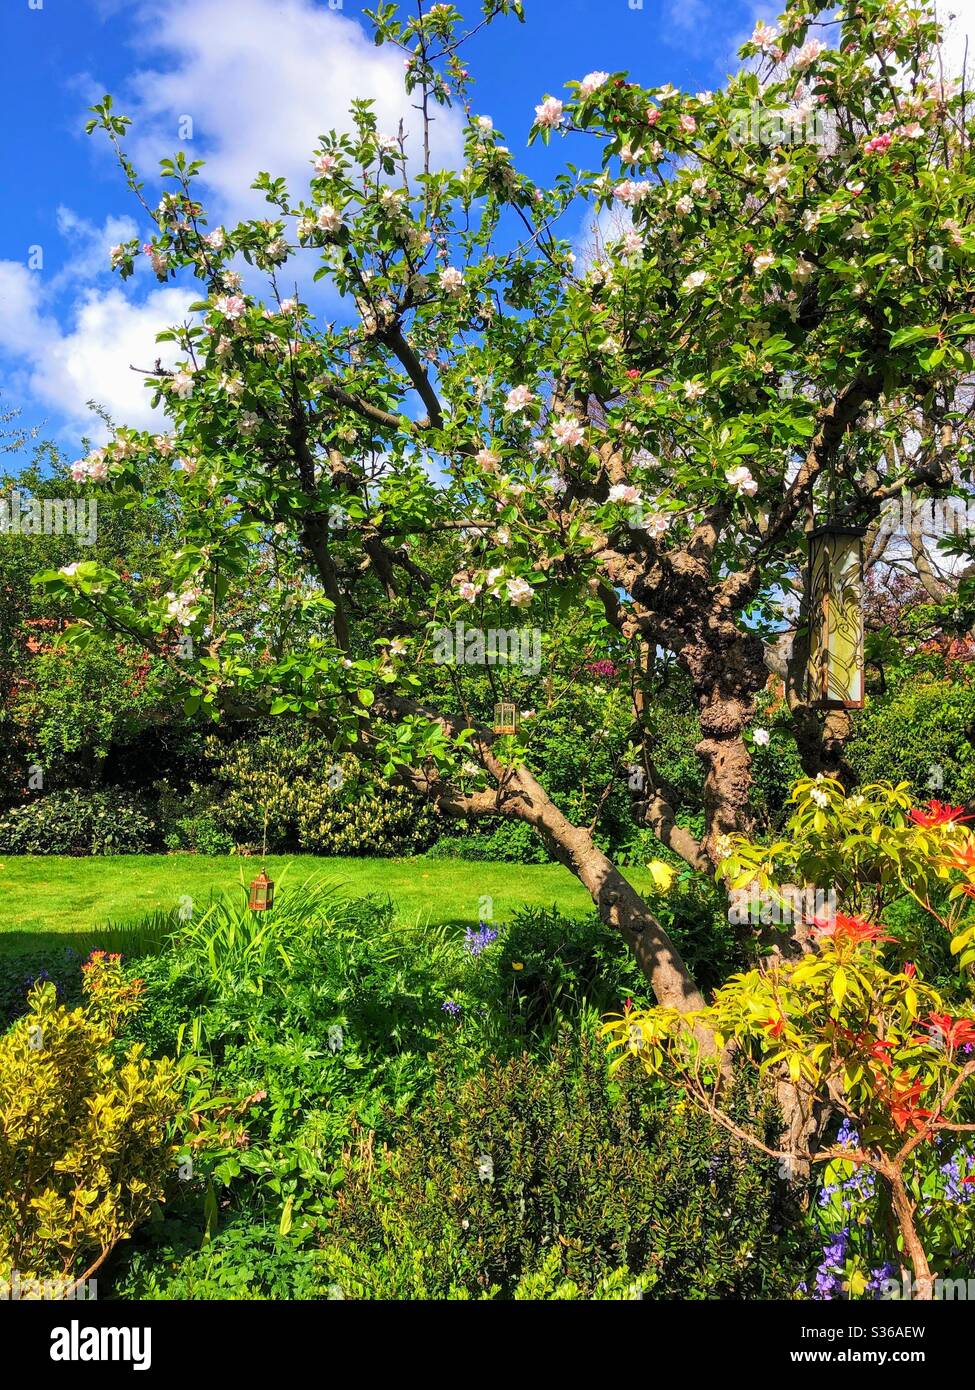 Jardin mature avec pommier, pelouse et bordures de fleurs, Angleterre, Royaume-Uni Banque D'Images